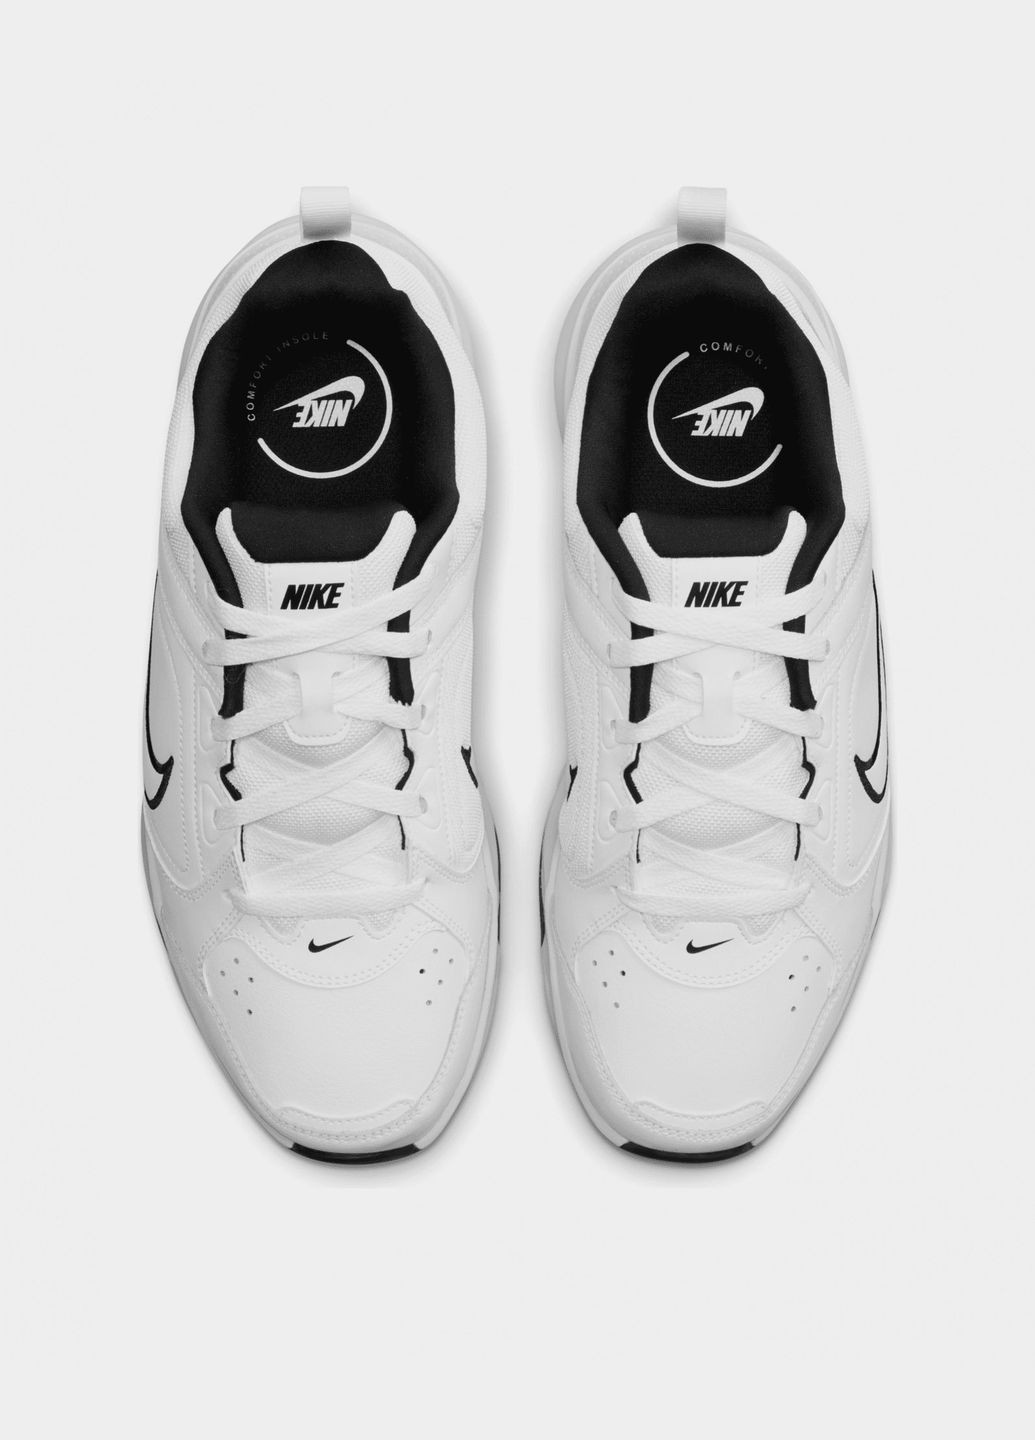 Белые всесезонные мужские кроссовки defy all day dm7564-100 весна-осень кожа текстиль белые Nike